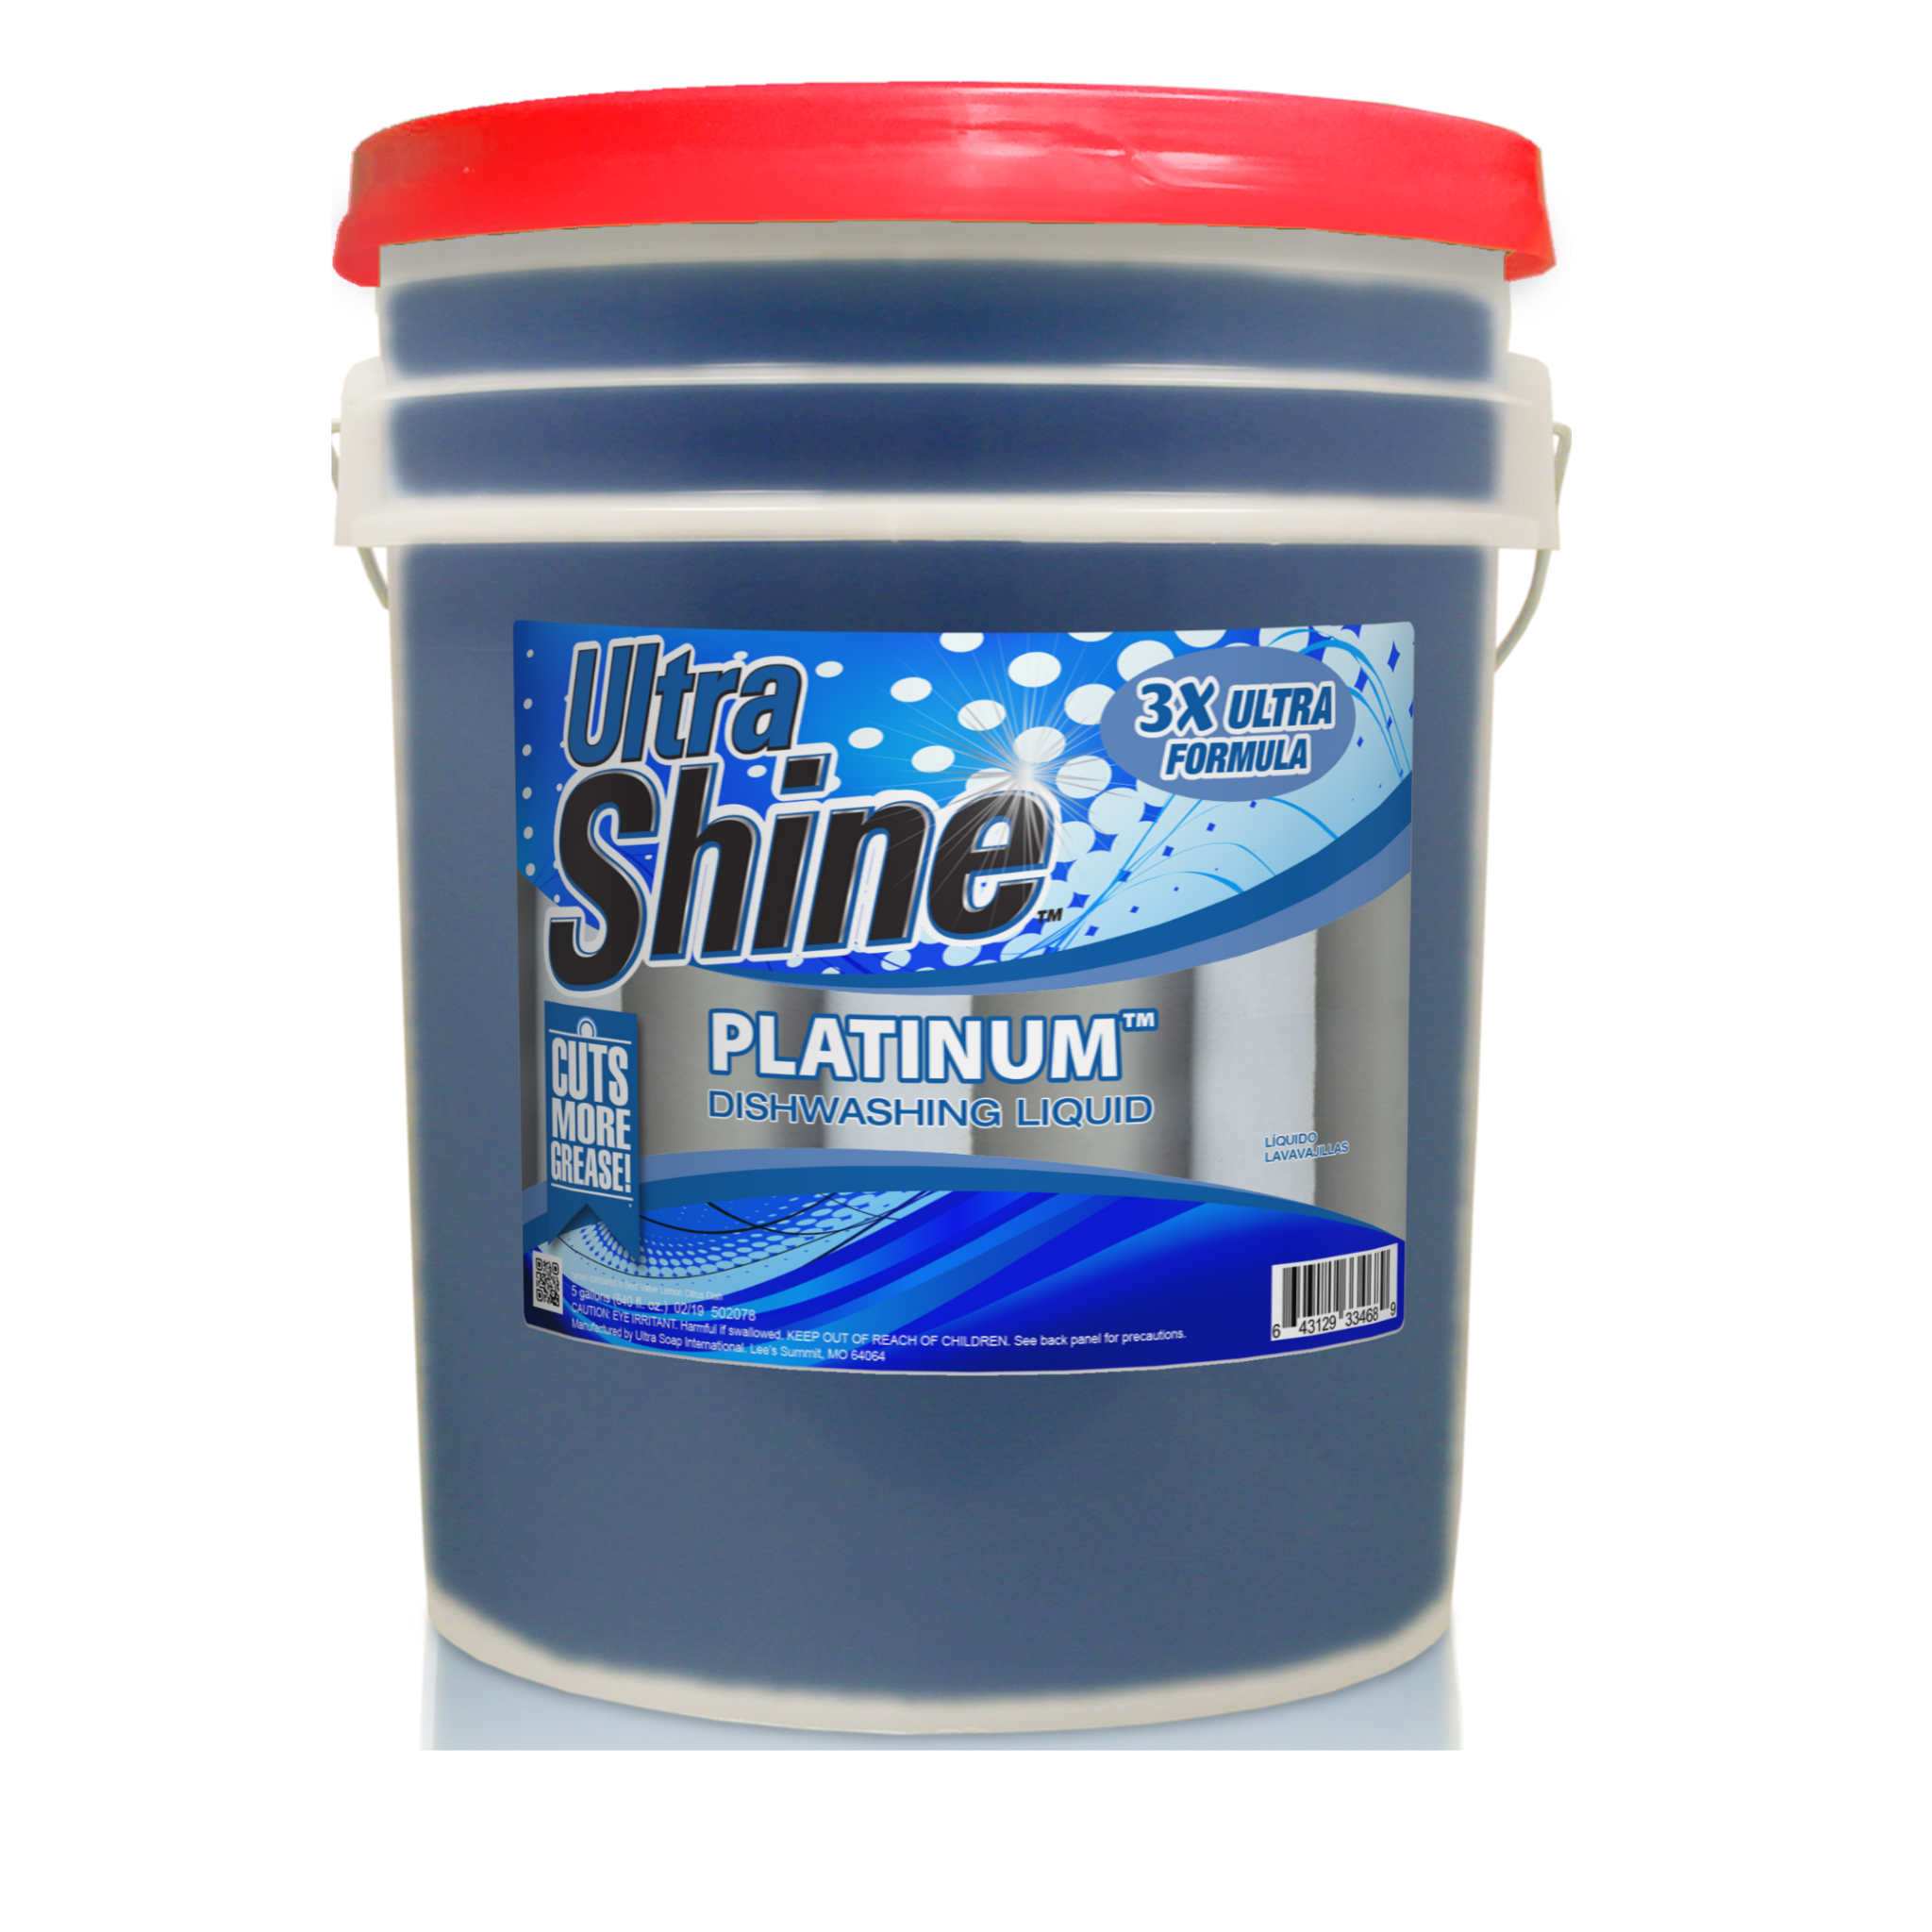 Ultra Shine 3x Platinum Dishwashing Liquid - 5 Gallon